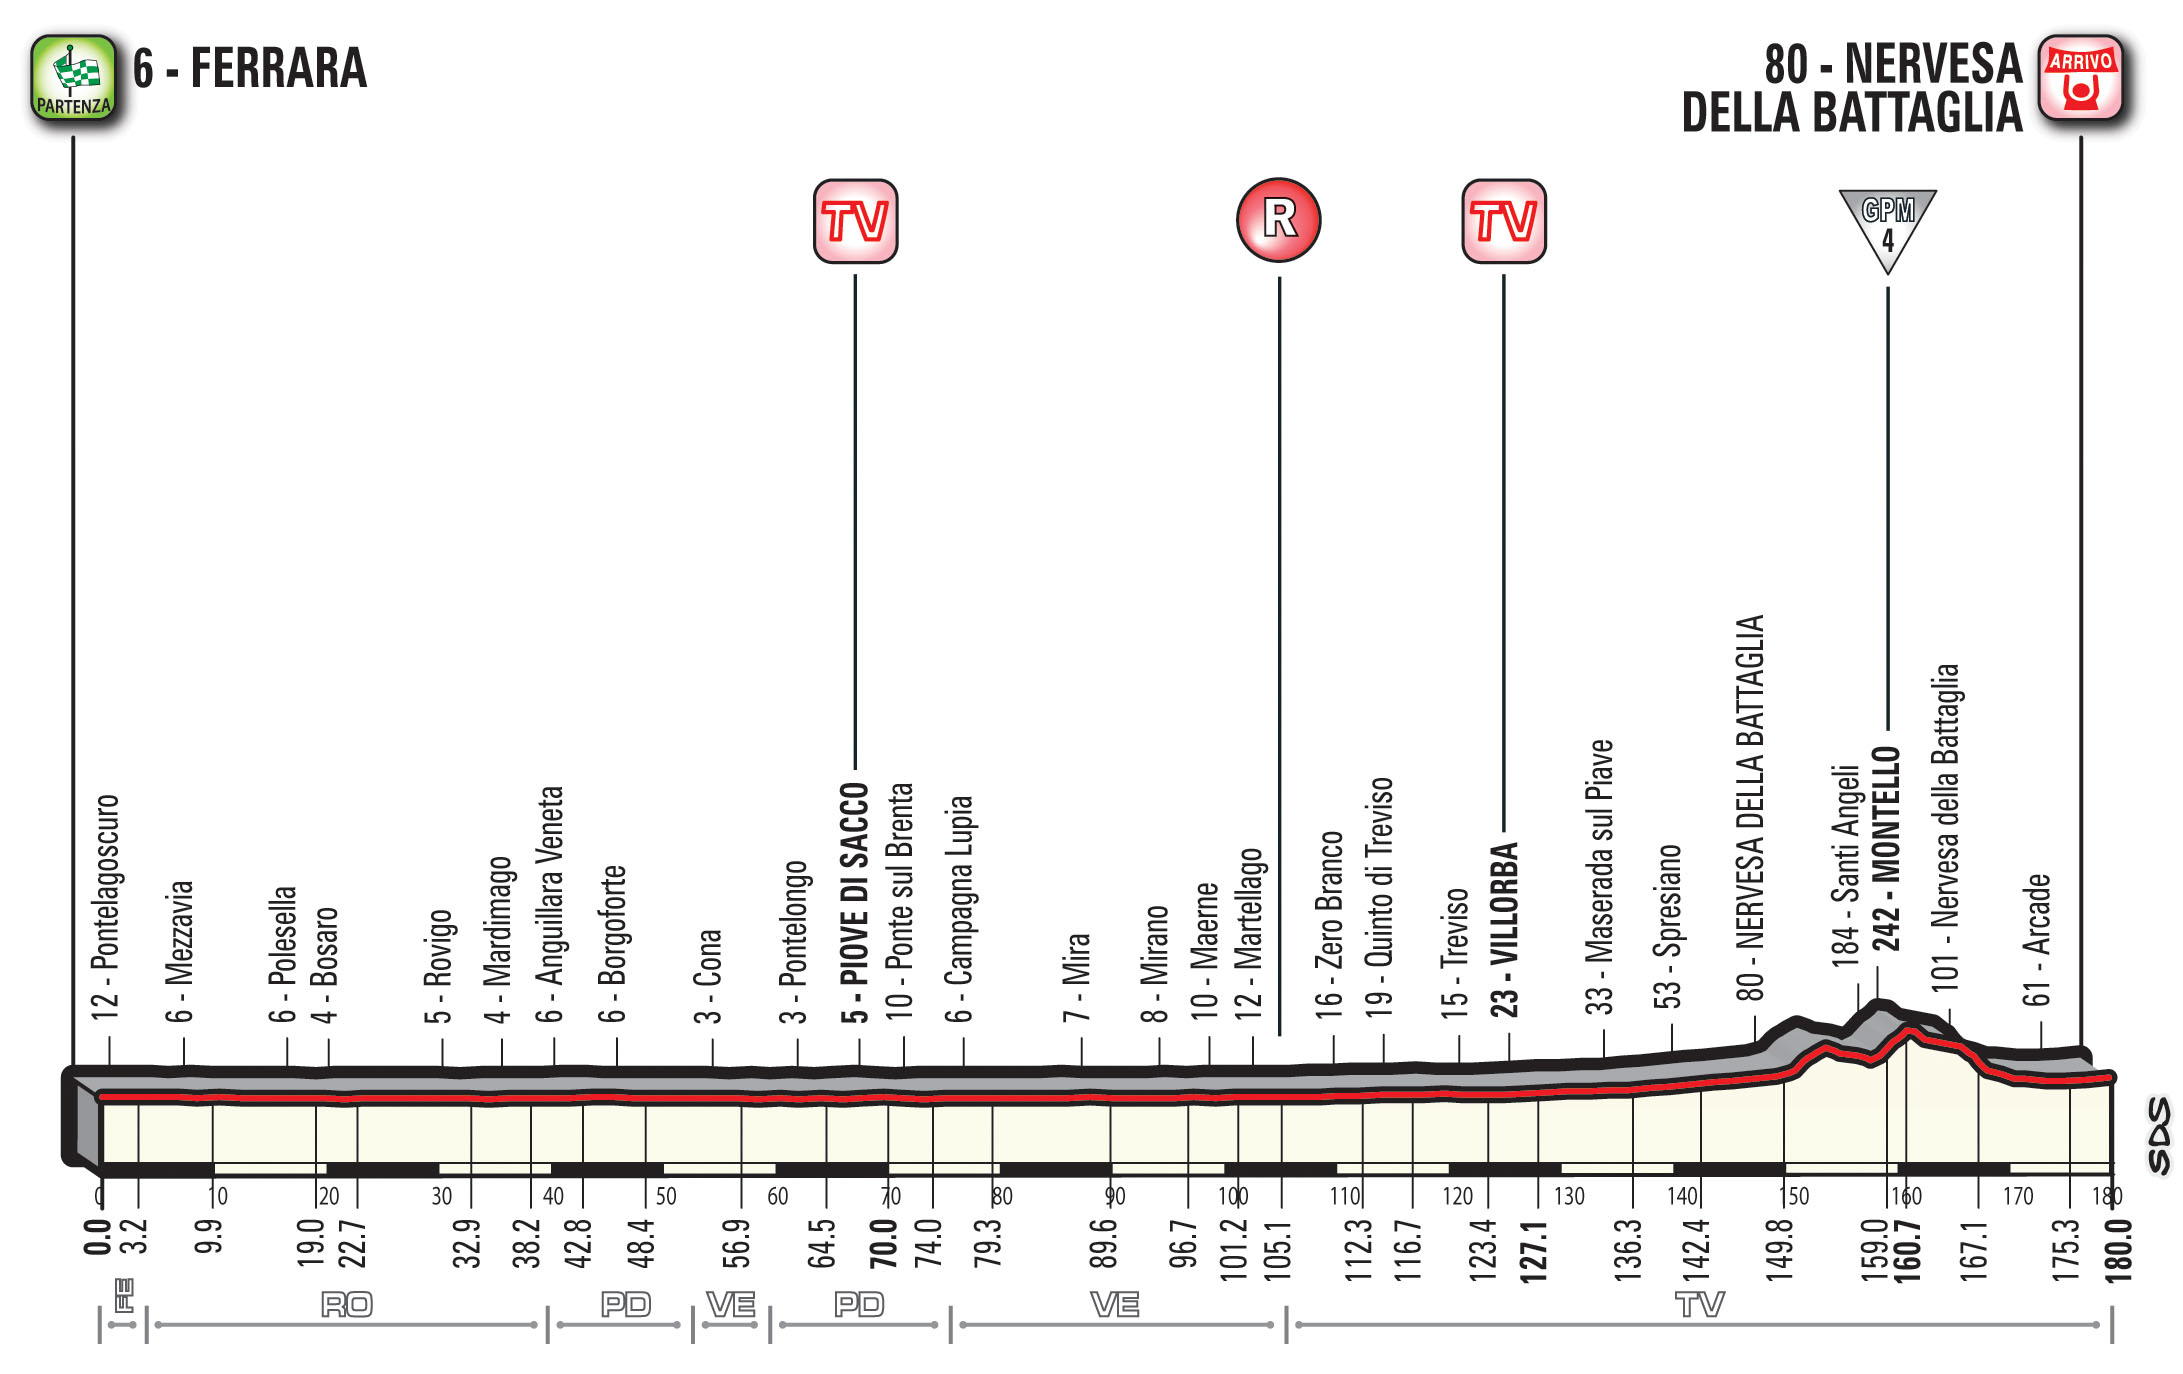 profil 13. etapu Giro d'Italia 2018